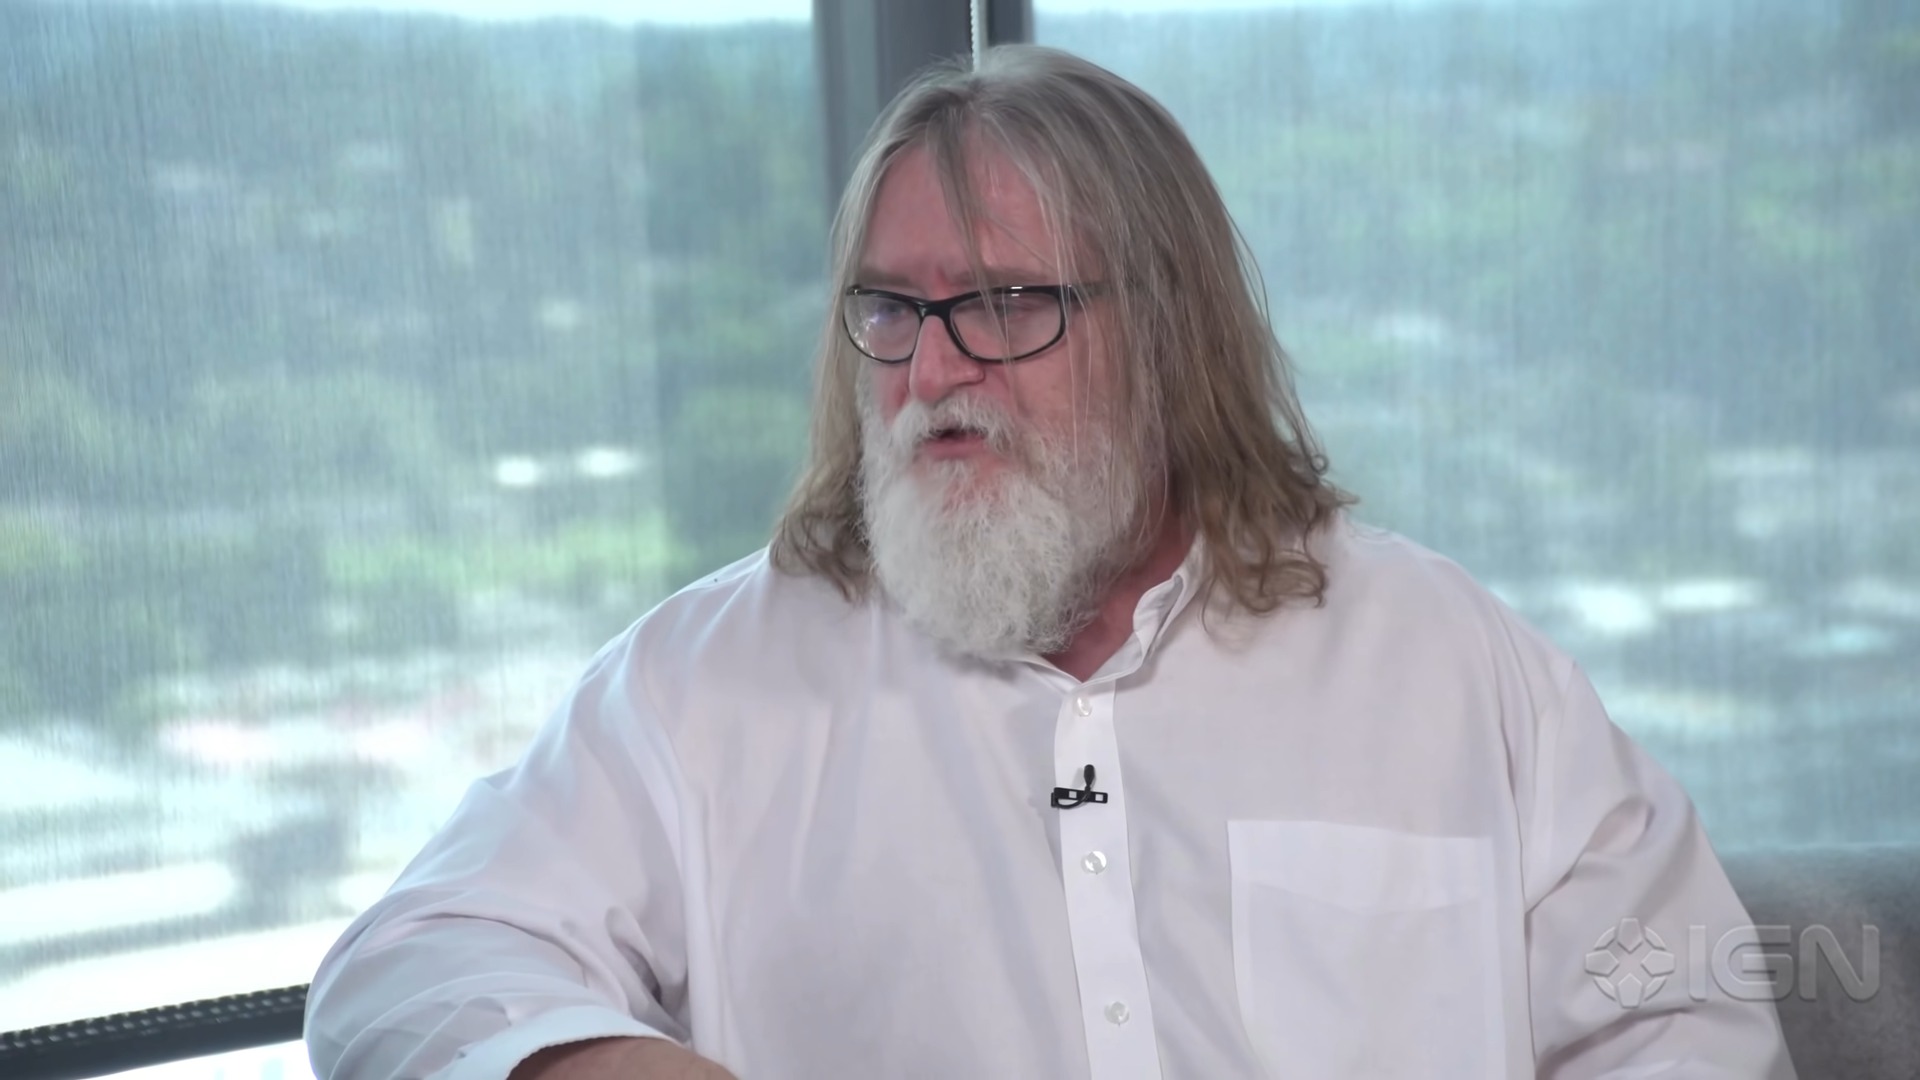 Fortuna de CEO da Epic Games já é superior à de Gabe Newell